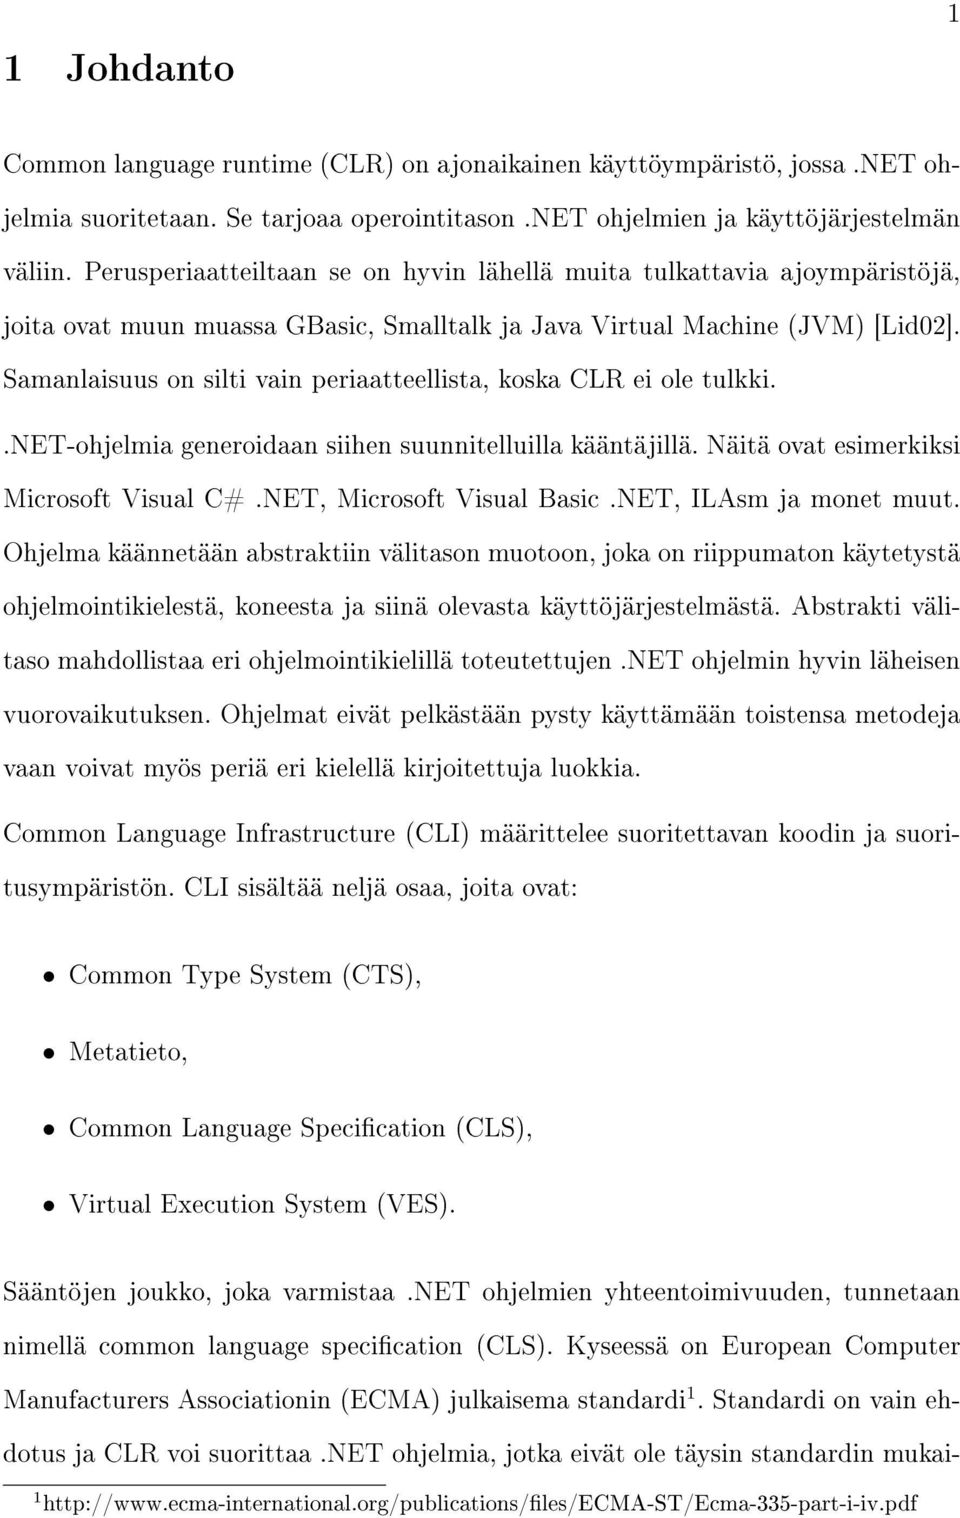 Samanlaisuus on silti vain periaatteellista, koska CLR ei ole tulkki..net-ohjelmia generoidaan siihen suunnitelluilla kääntäjillä. Näitä ovat esimerkiksi Microsoft Visual C#.